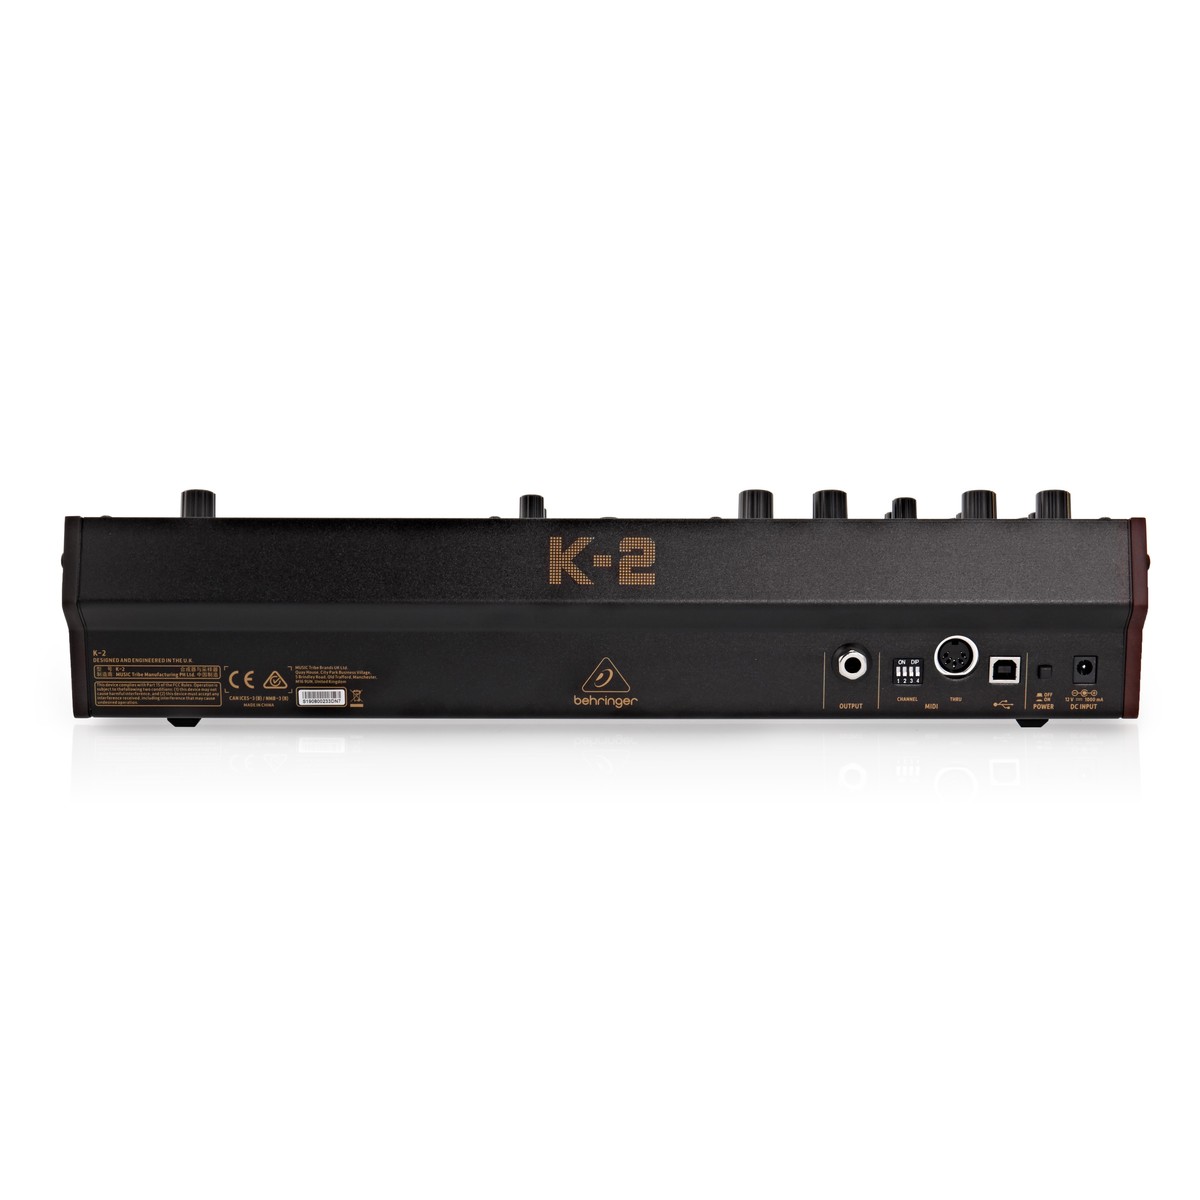 BEHRINGER K2 SINTETIZZATORE ANALOGICO MONOFONICO SEMI MODULARE MIDI USB 3